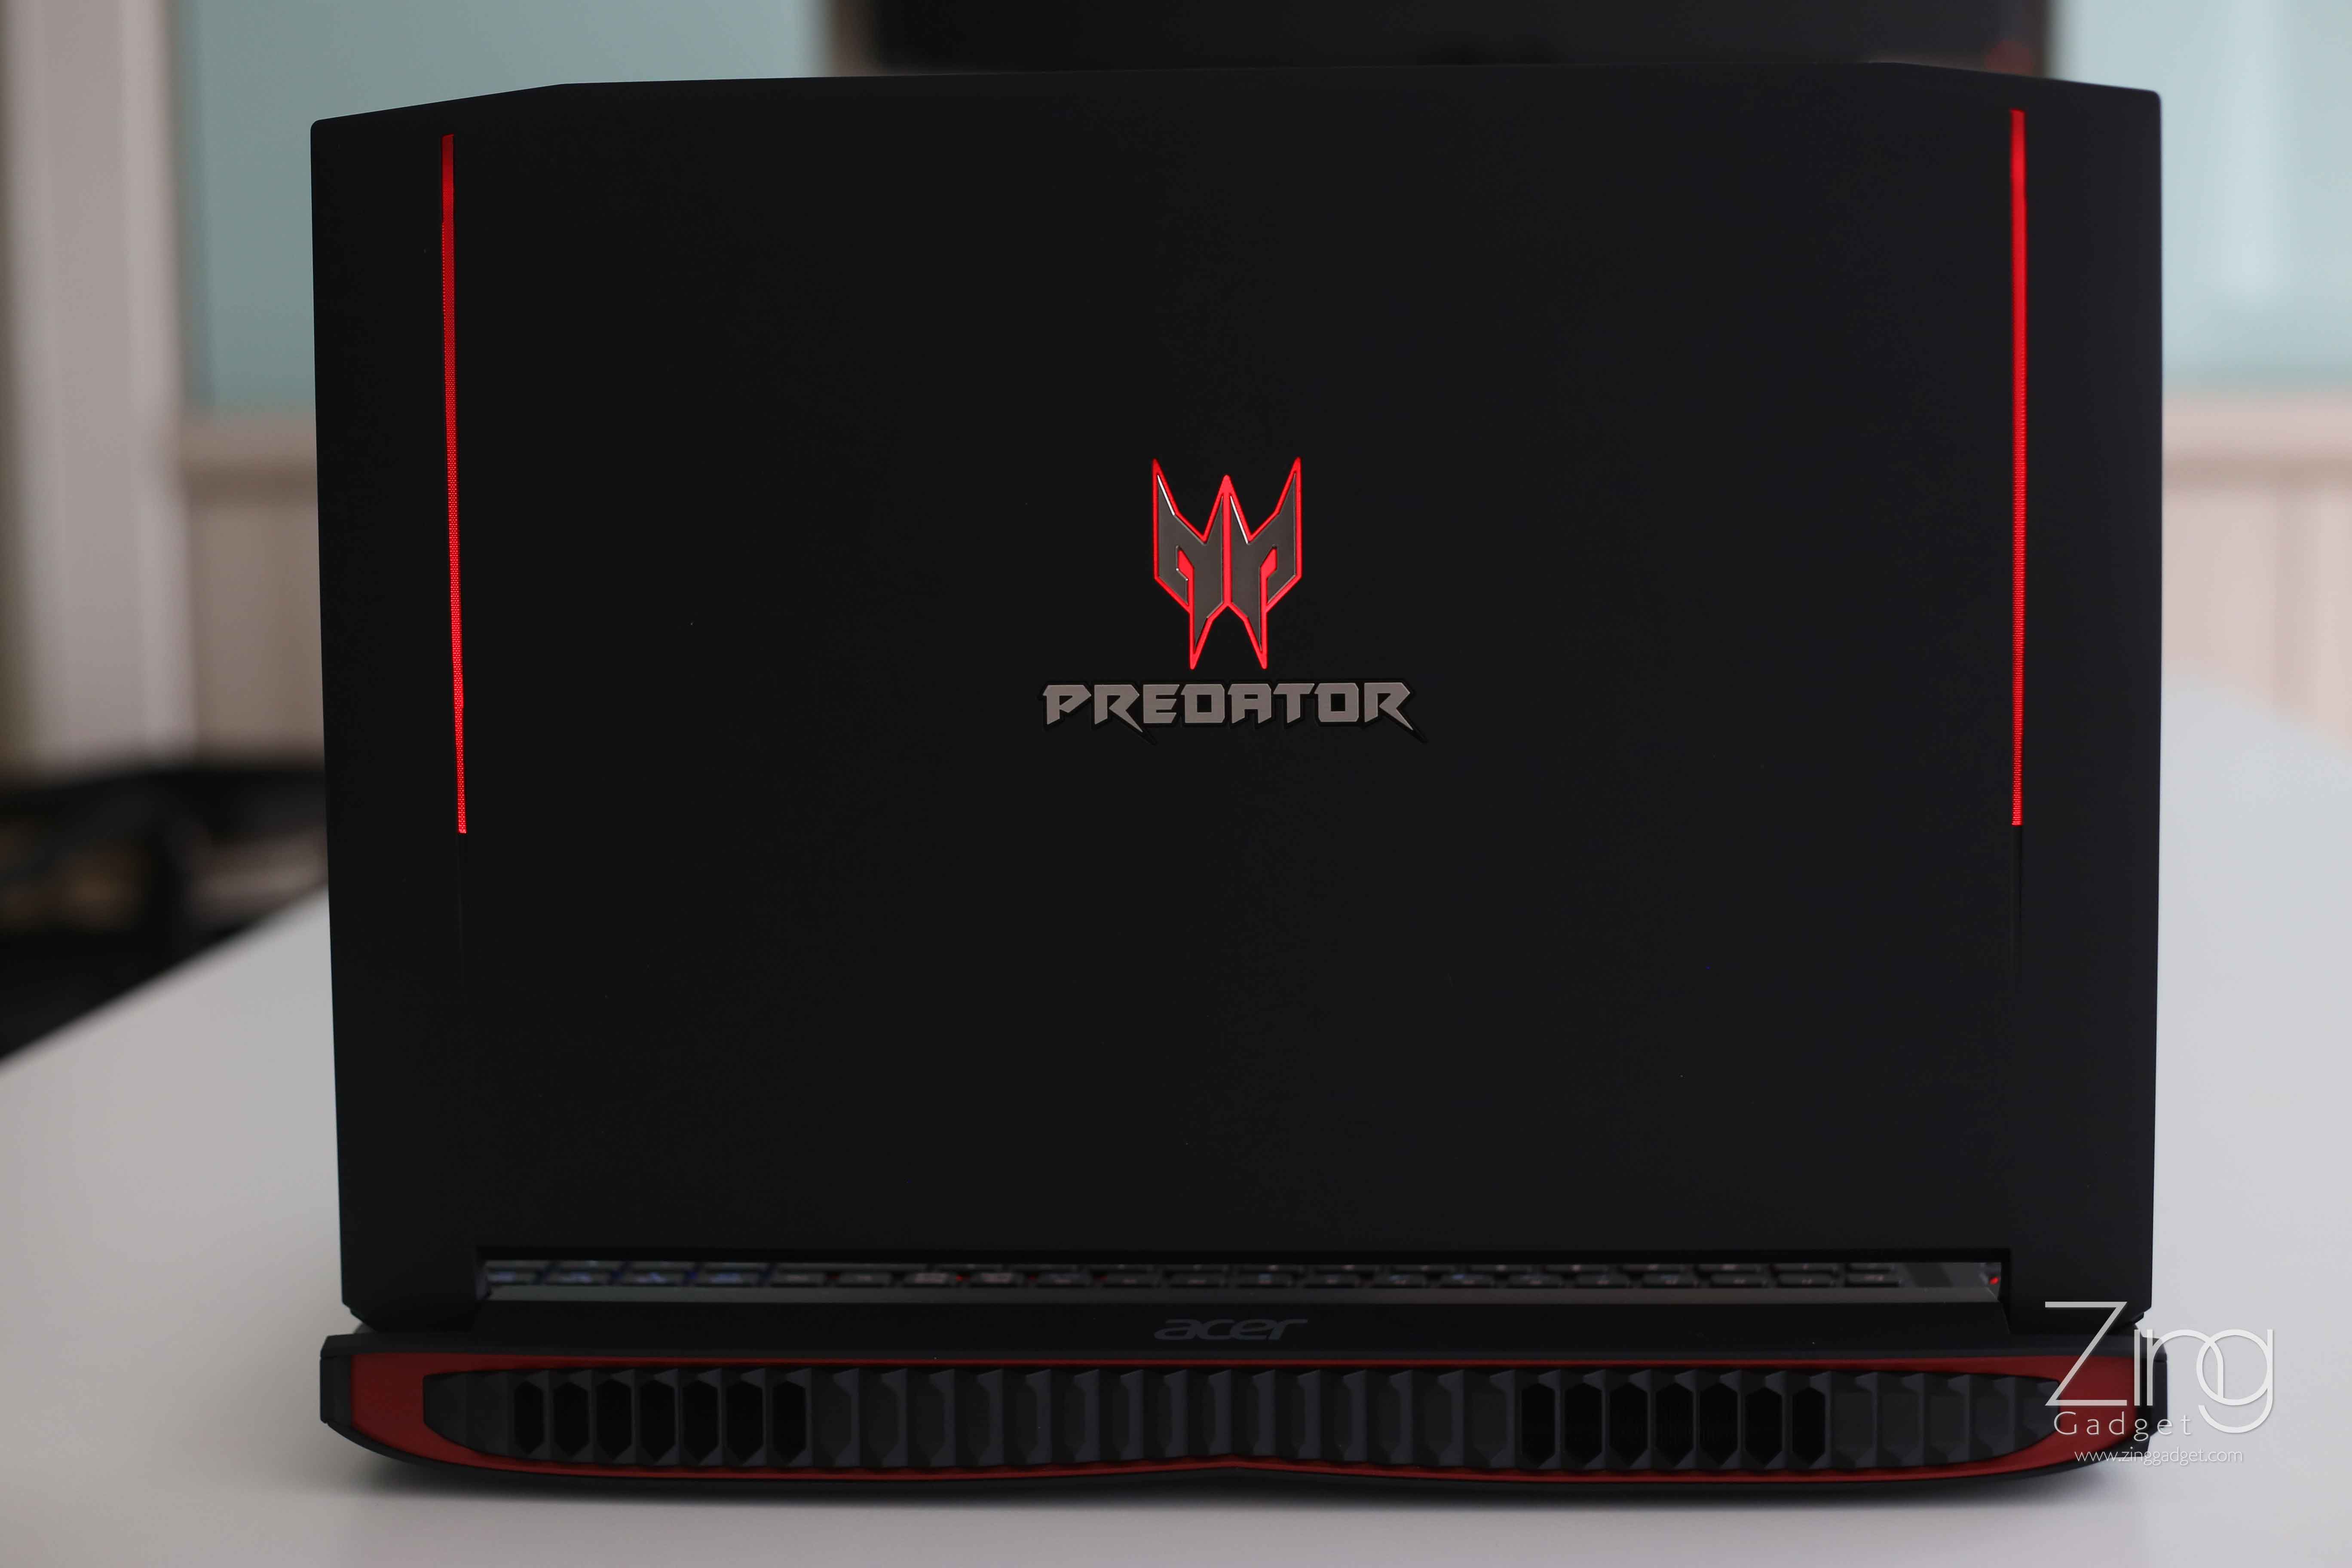 Acer Predator Logo - We Tested: Acer Predator 17 Gaming Laptop - Zing Gadget